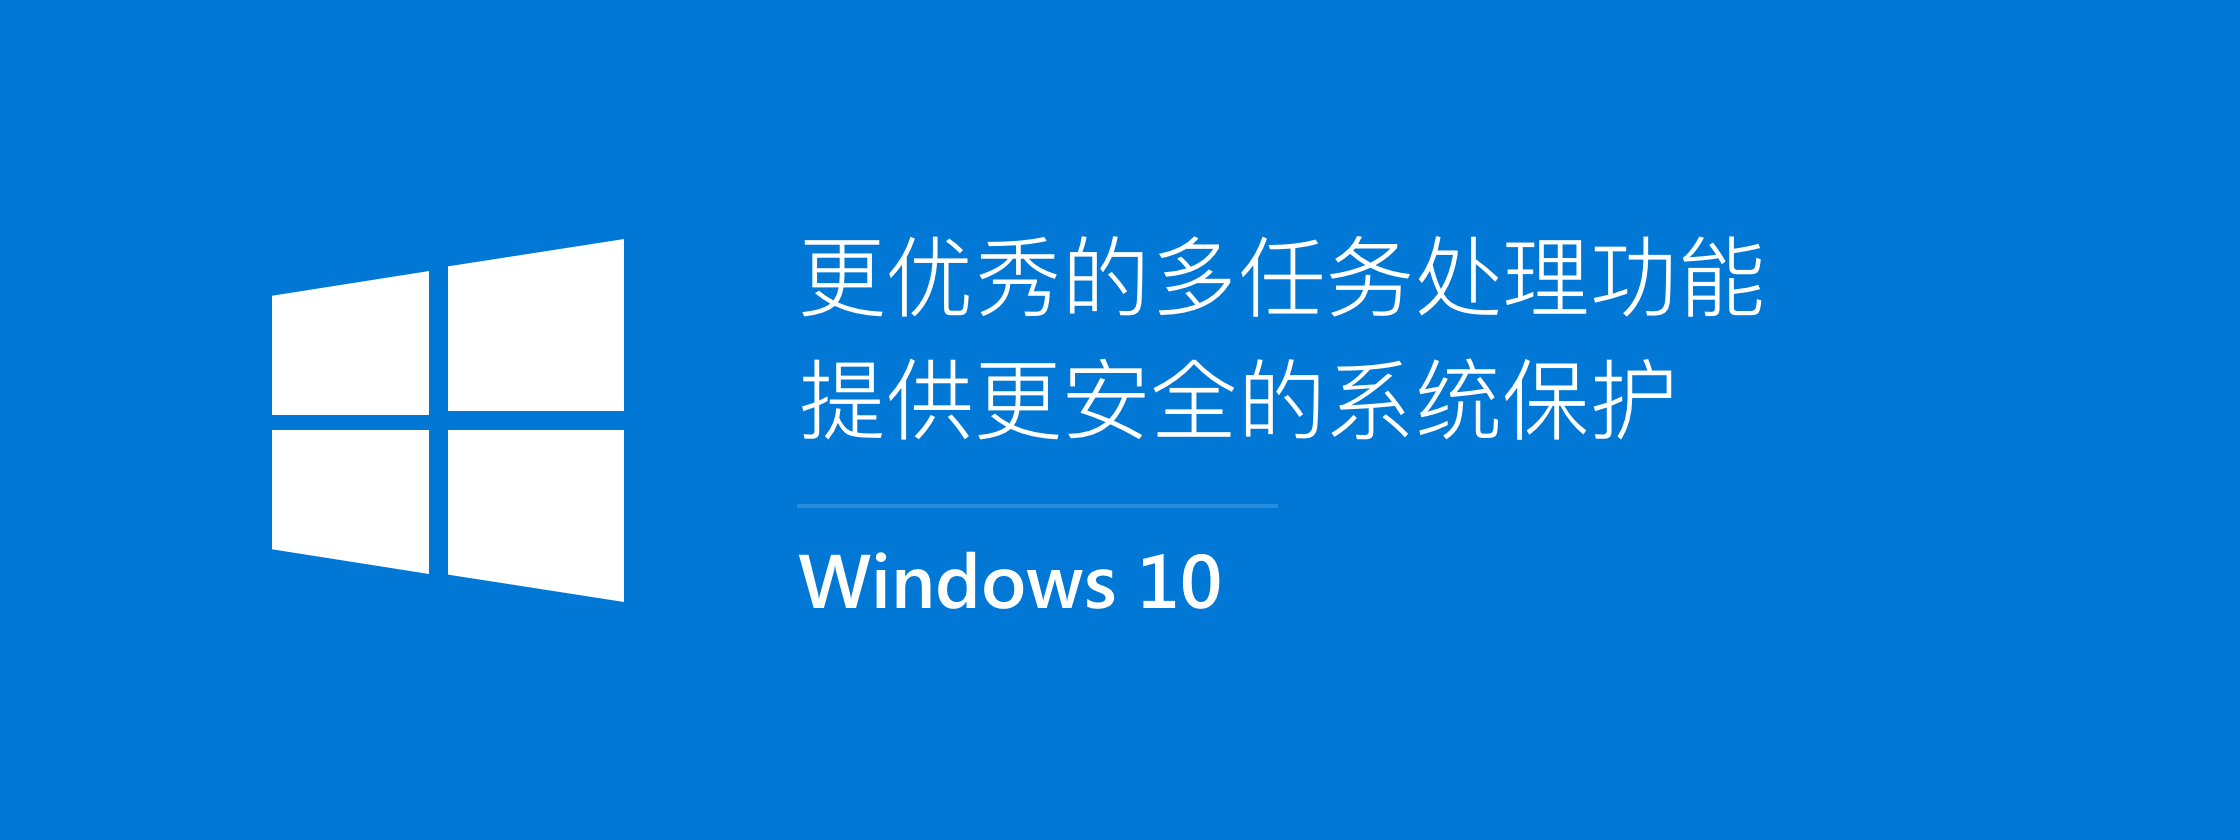 【正版特惠】Windows10 专业版仅需348元 送果核会员！